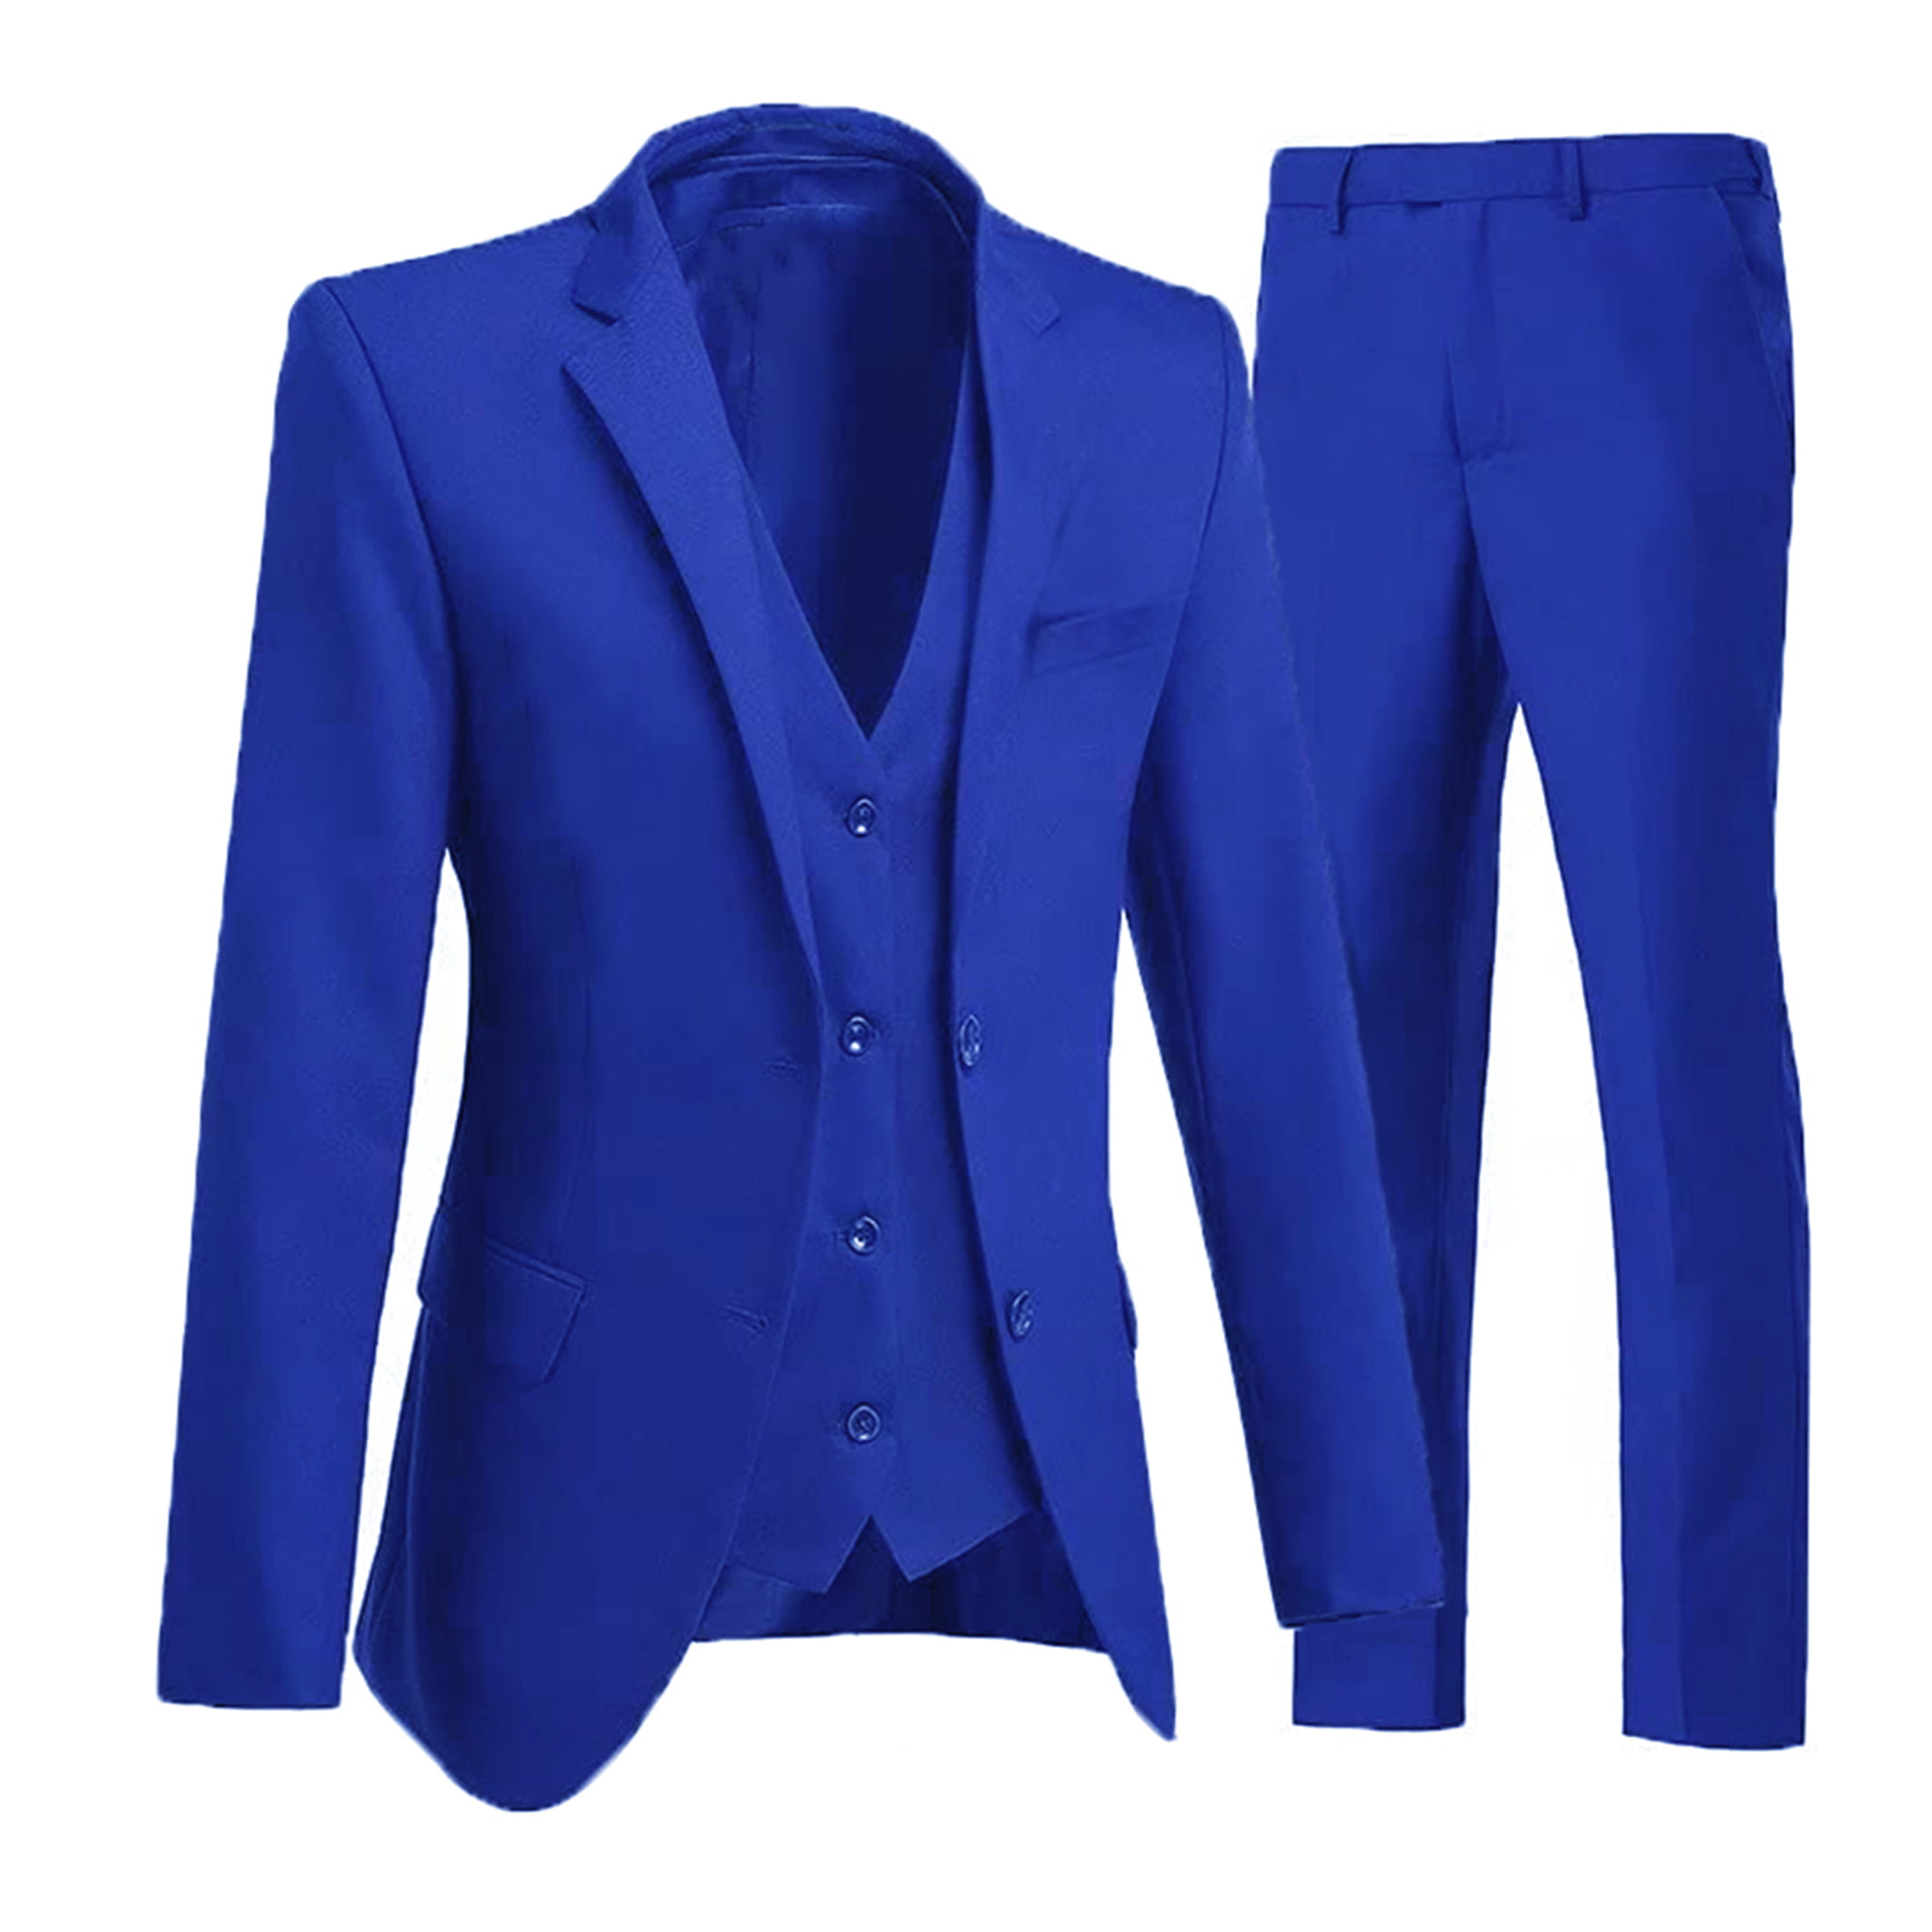 Wehilion Mens Royal Suit 3 Piece Slim Fit Tuxedo Jacket Vest Pants L ...